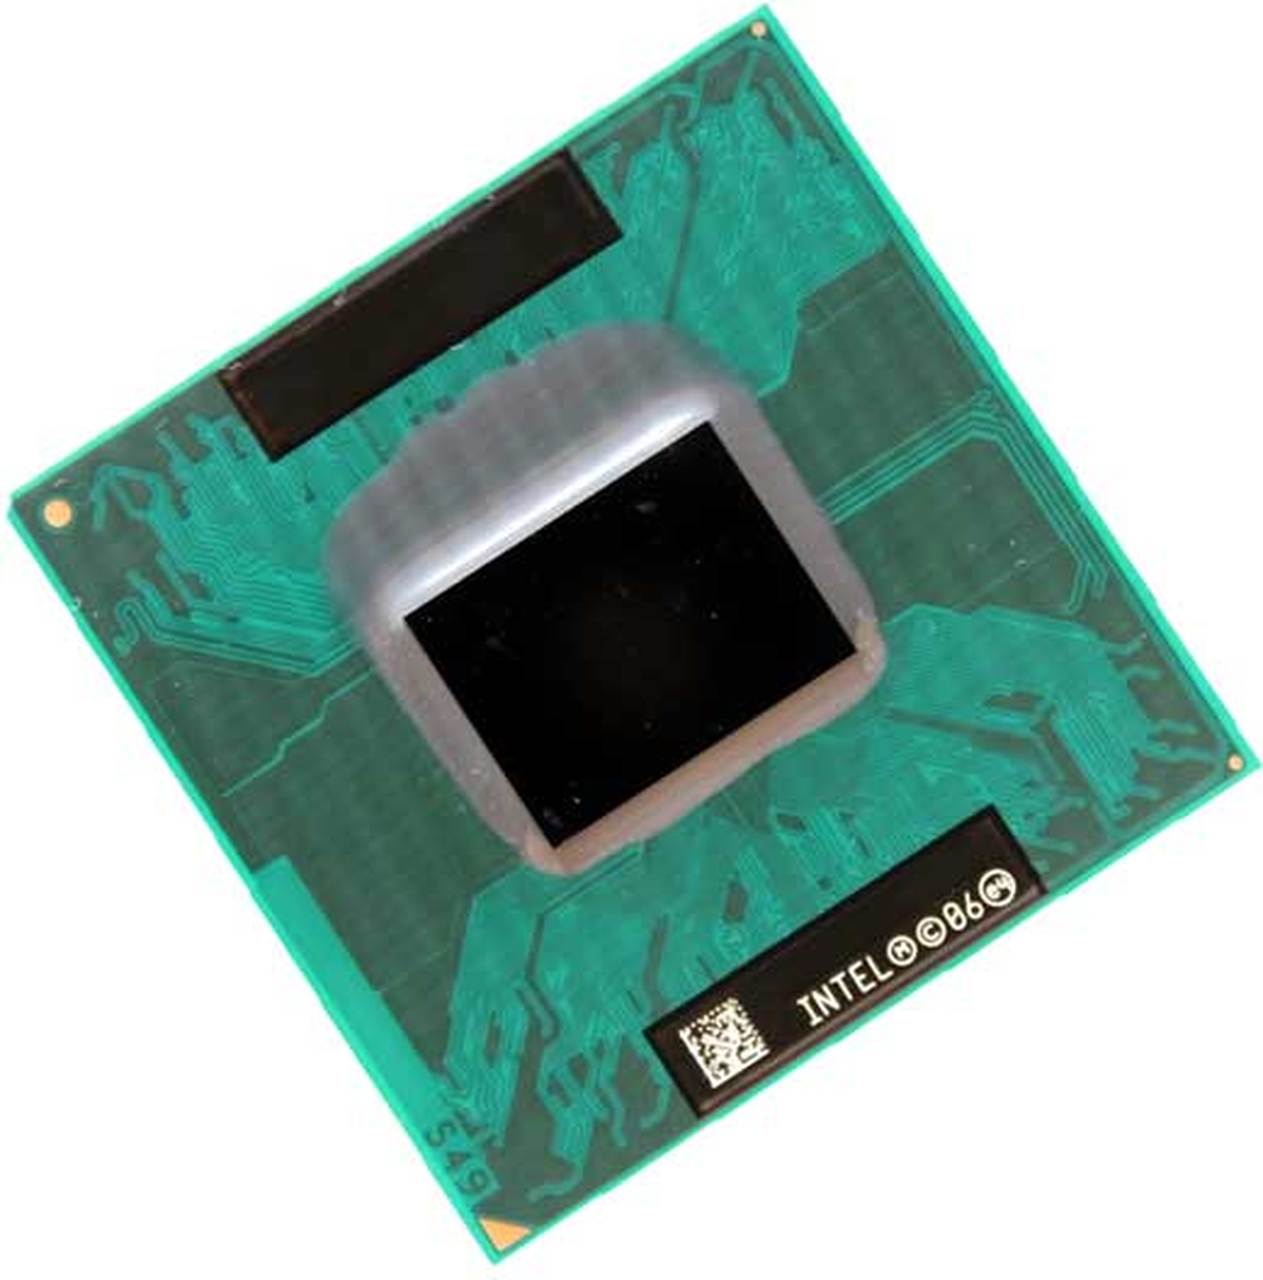 LE80538GF0282M | Intel Core Solo T1300 1 Core 1.66GHz BGA479 2 MB L2 Processor